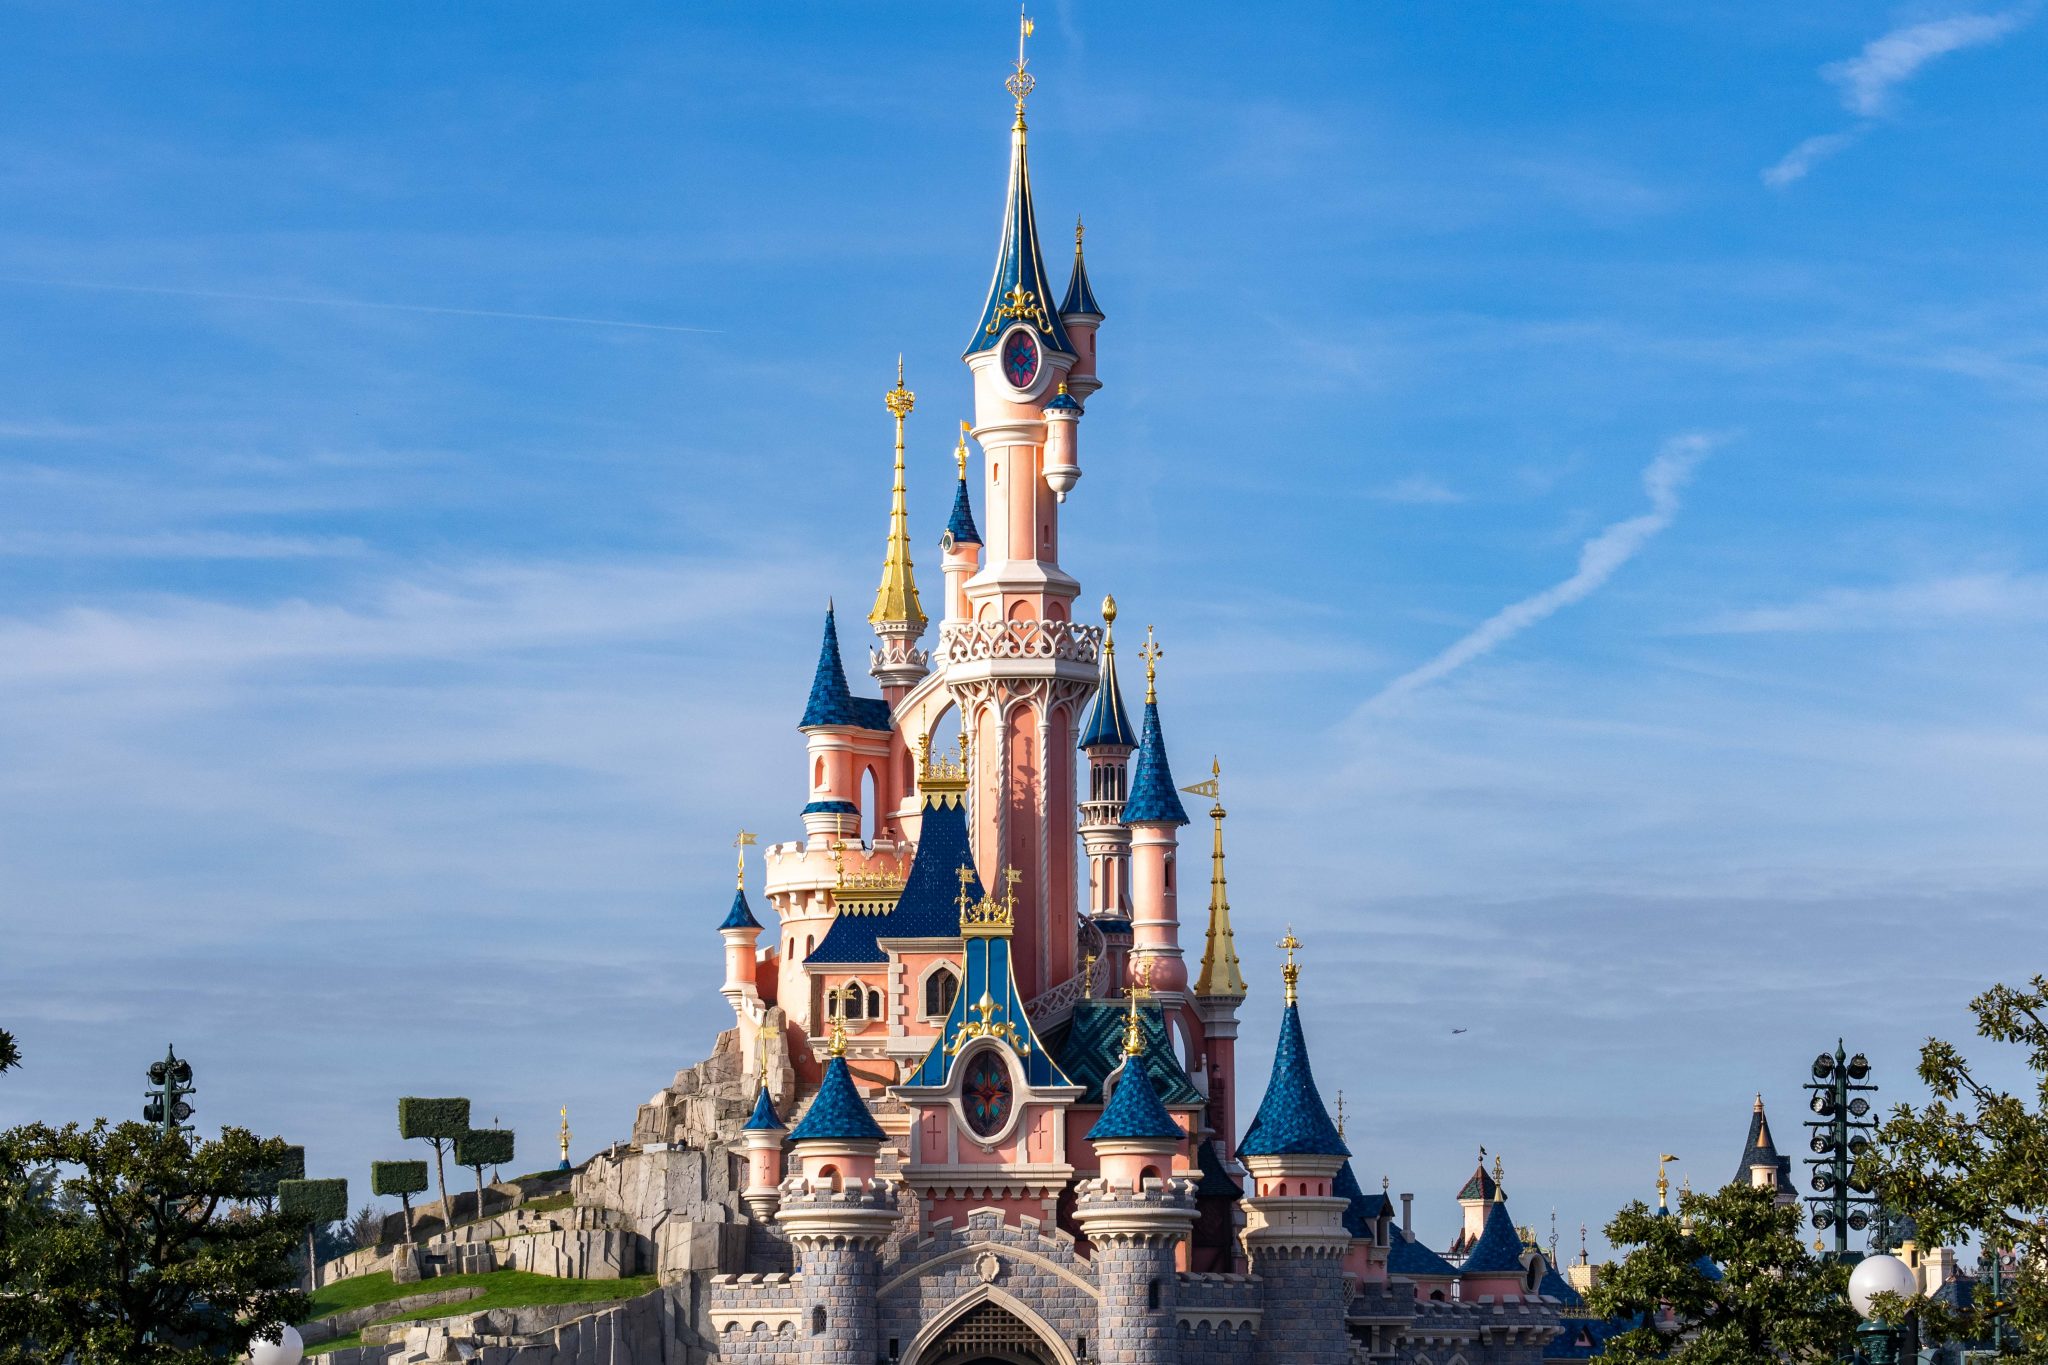 Disneyland Paris récompensé pour l’Excellence de ses Attractions et Expériences